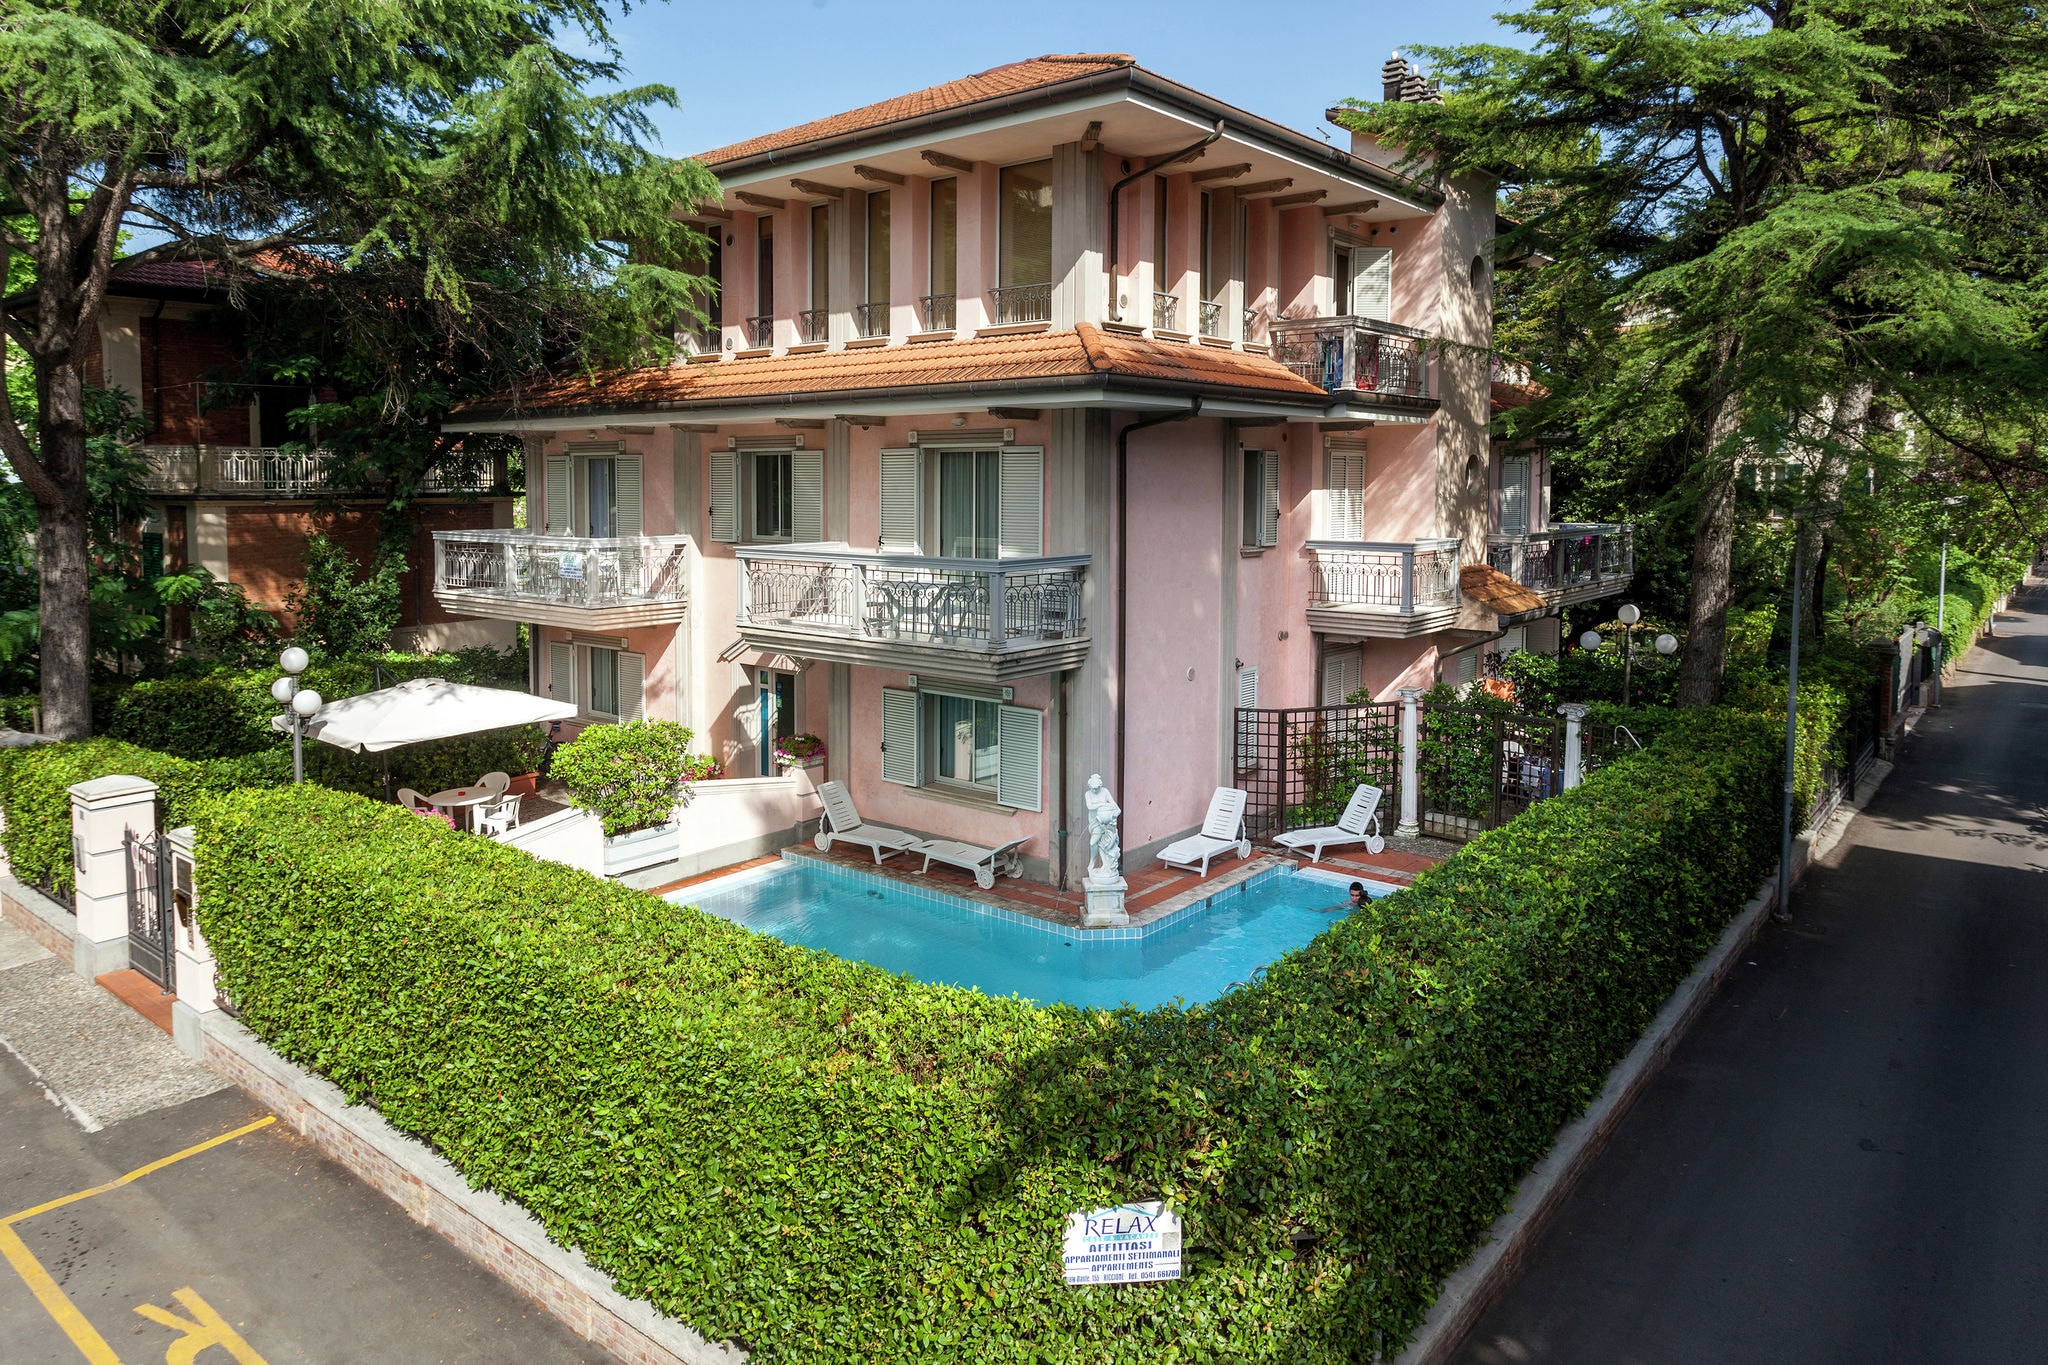 Appartement in villa met zwembad in rustige centrale zone, 150m van zee